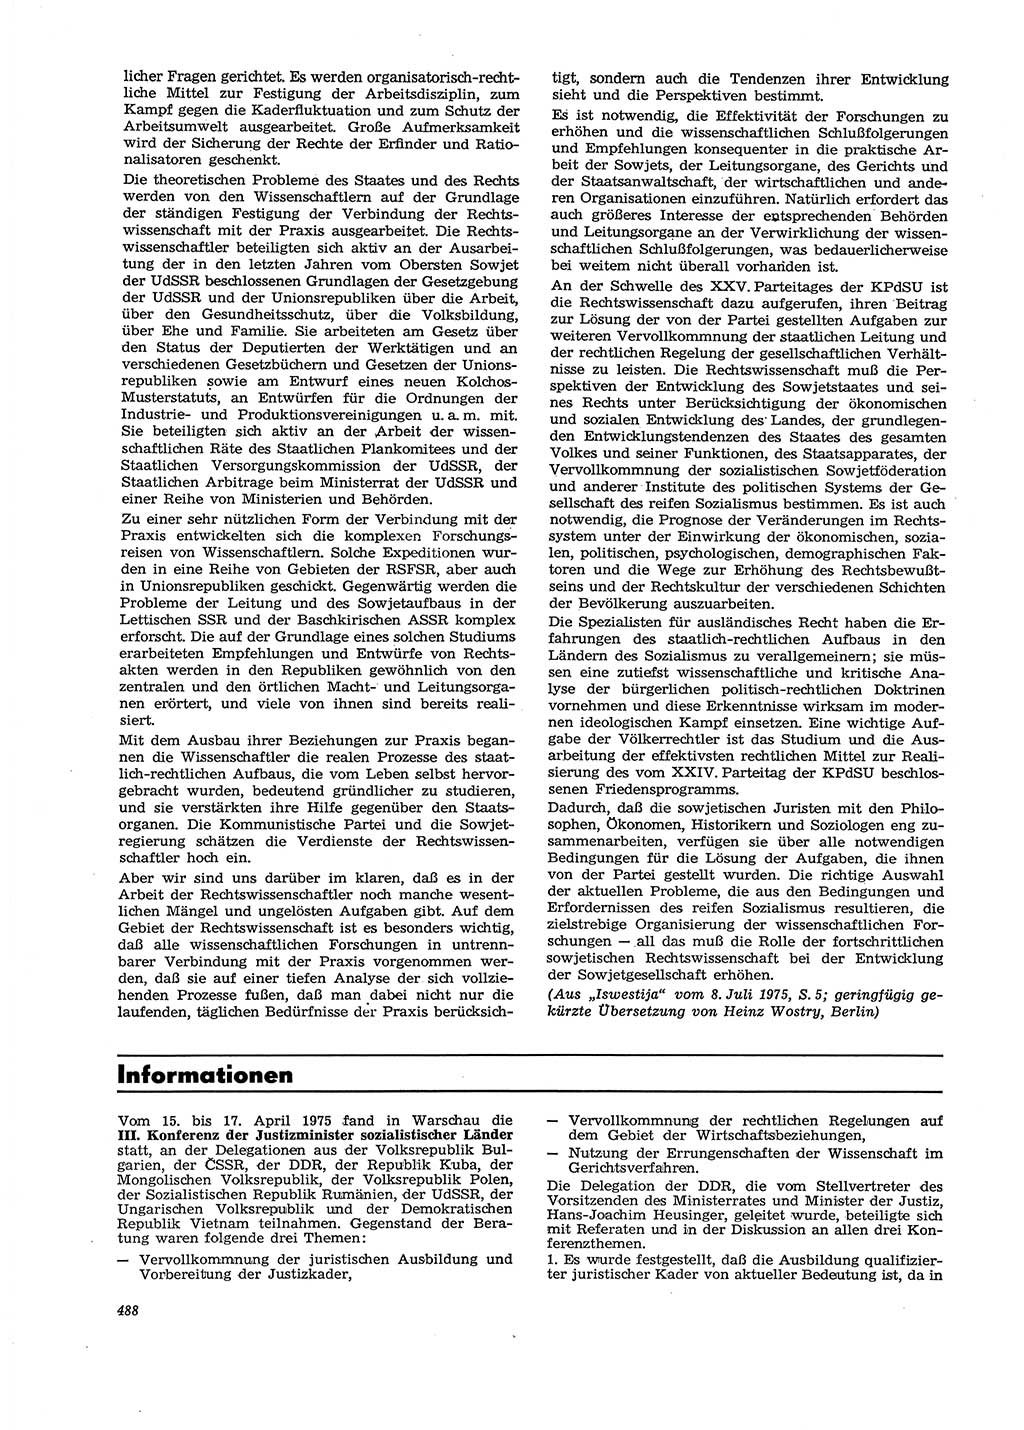 Neue Justiz (NJ), Zeitschrift für Recht und Rechtswissenschaft [Deutsche Demokratische Republik (DDR)], 29. Jahrgang 1975, Seite 488 (NJ DDR 1975, S. 488)